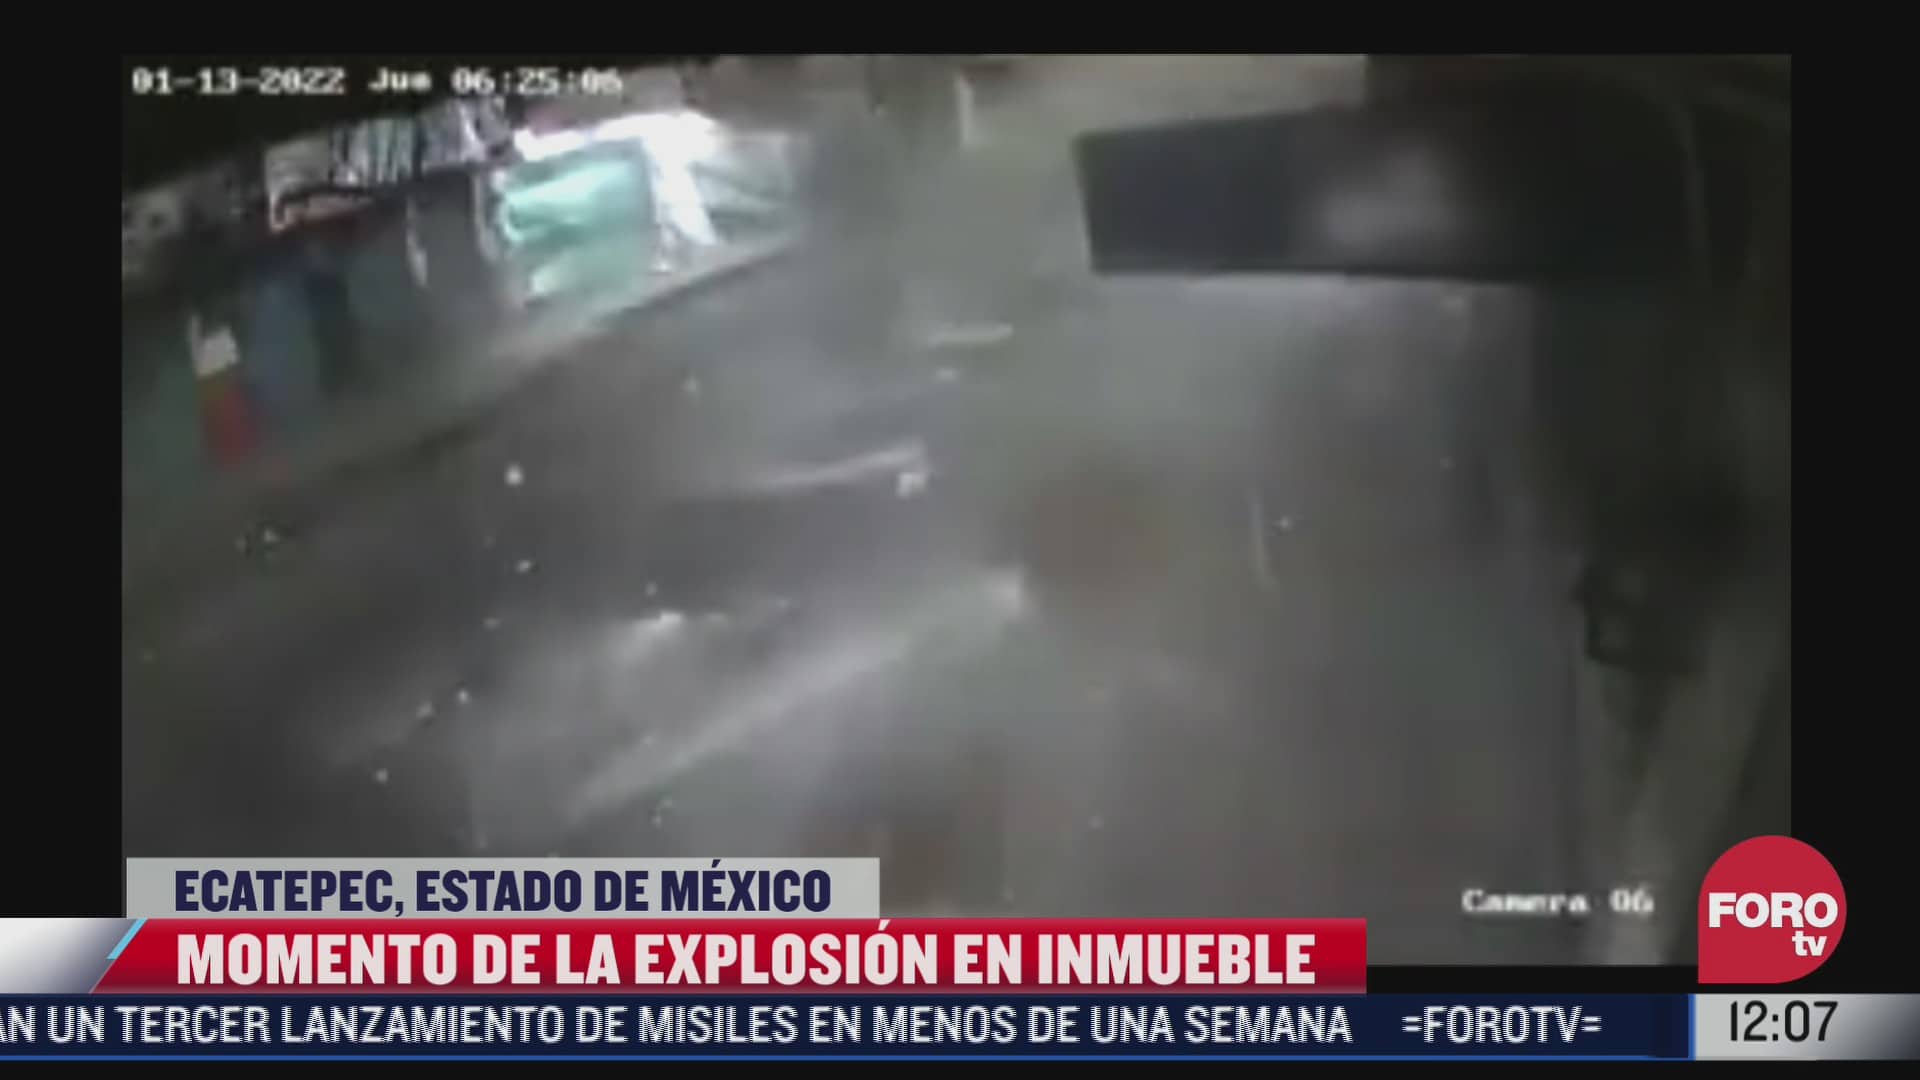 asi fue el momento de la explosion en un inmueble de ecatepec